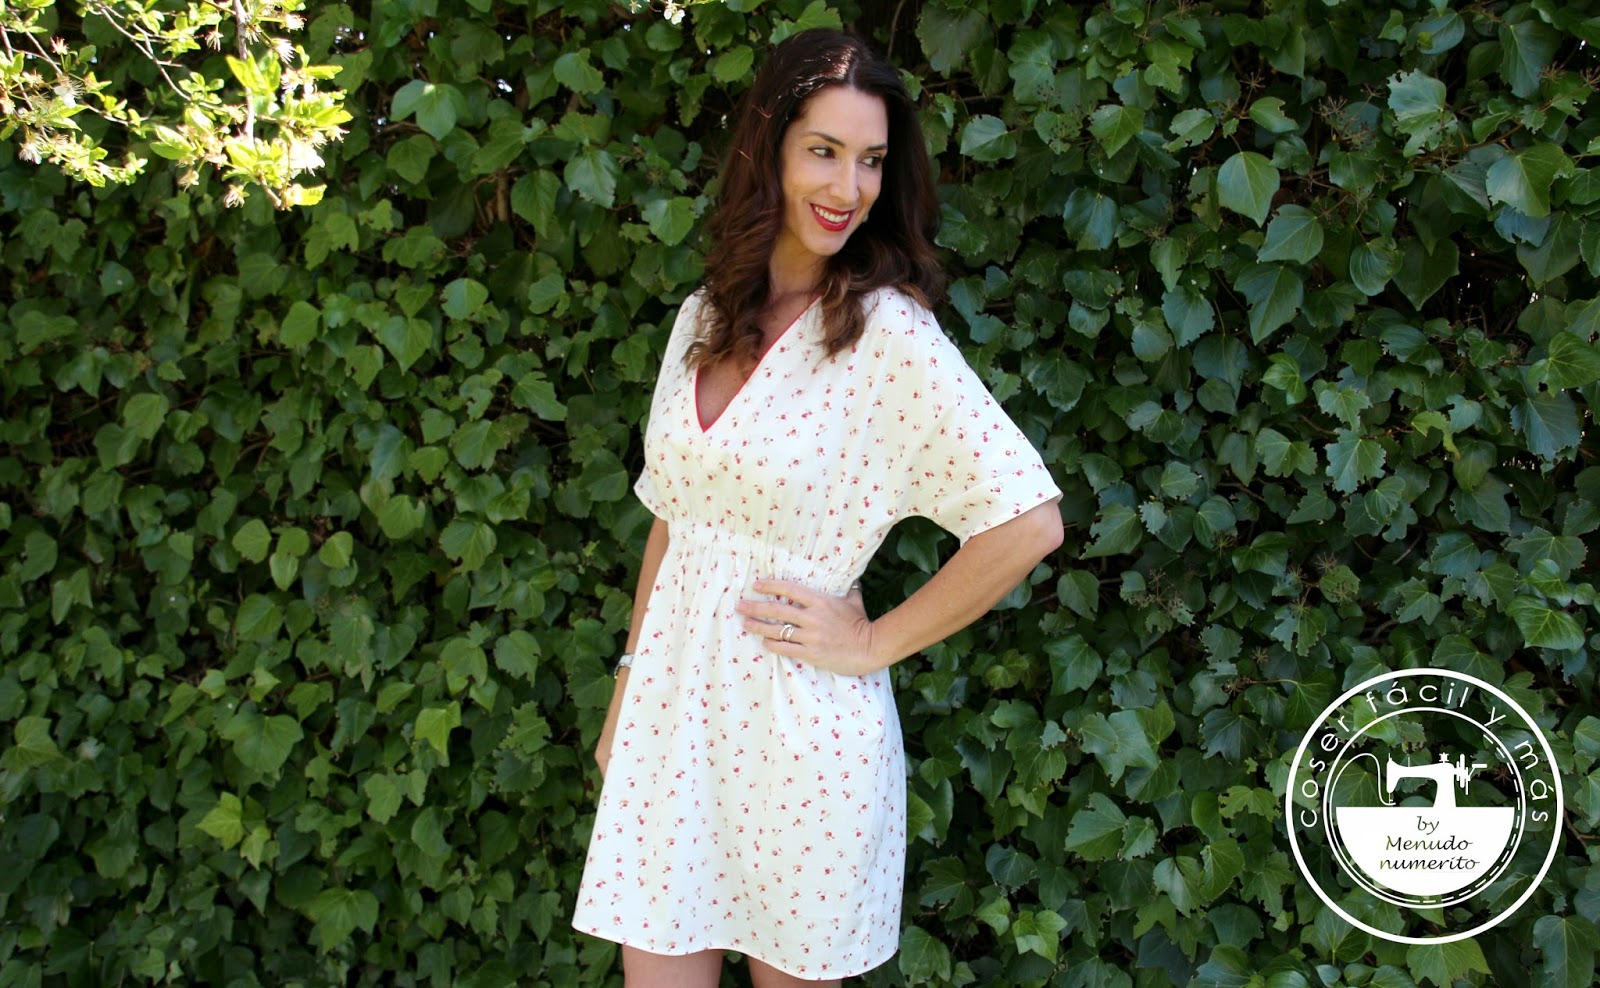 Cómo coser un vestido verano con patrón a medida - El blog de Coser fácil y más by Menudo numerito